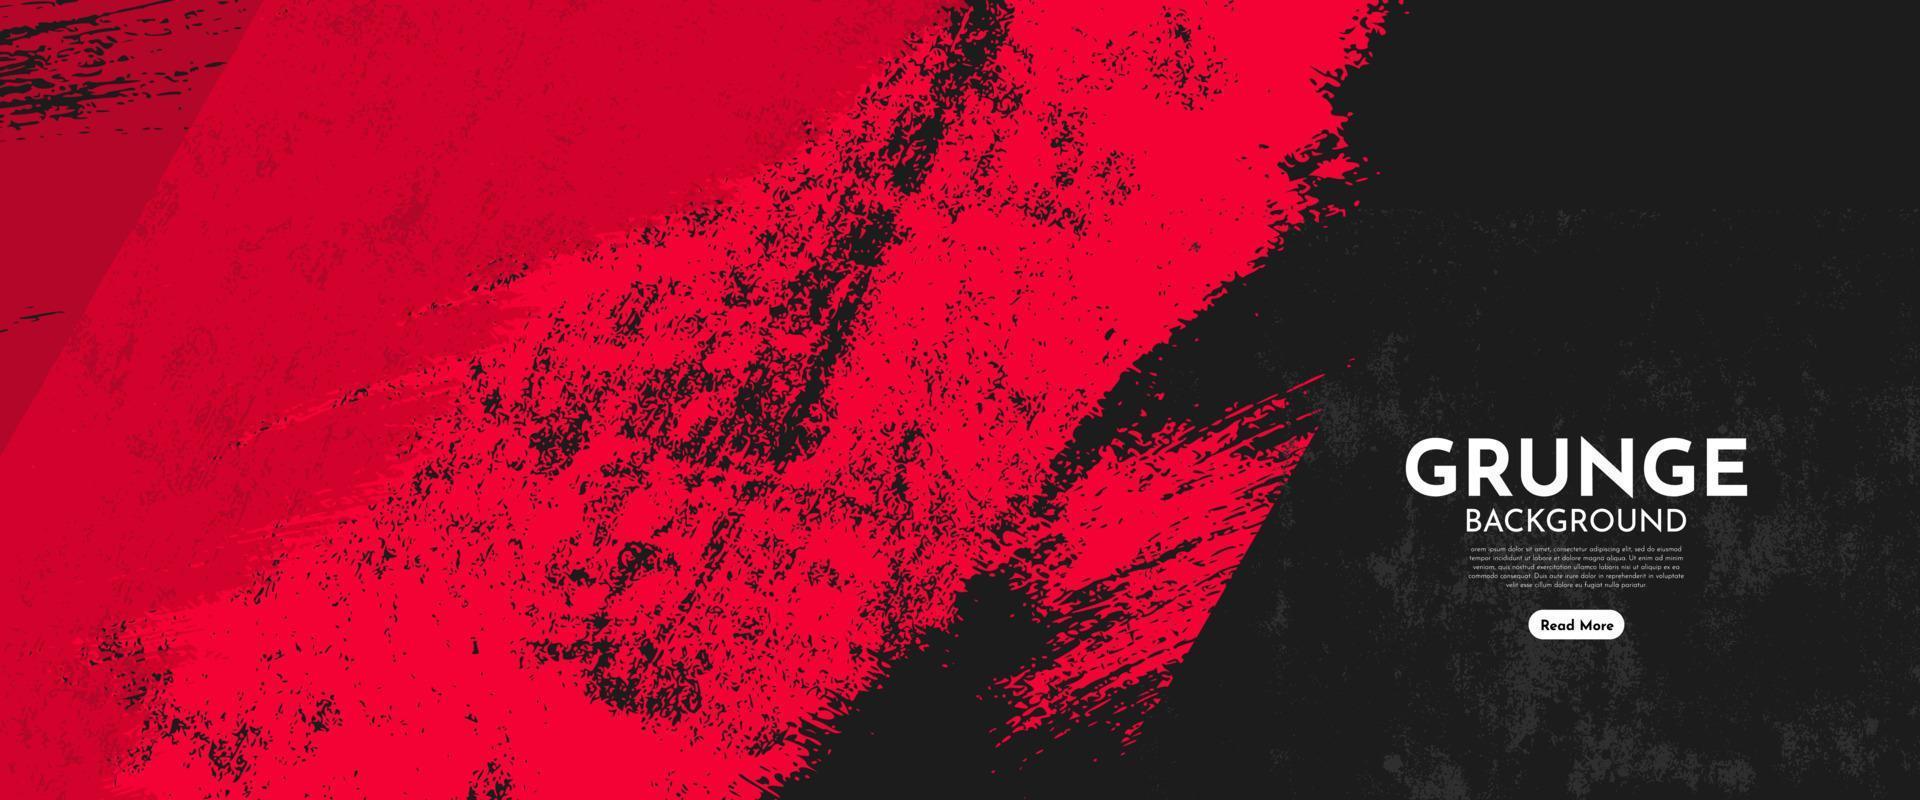 fond grunge sale abstrait noir et rouge vecteur